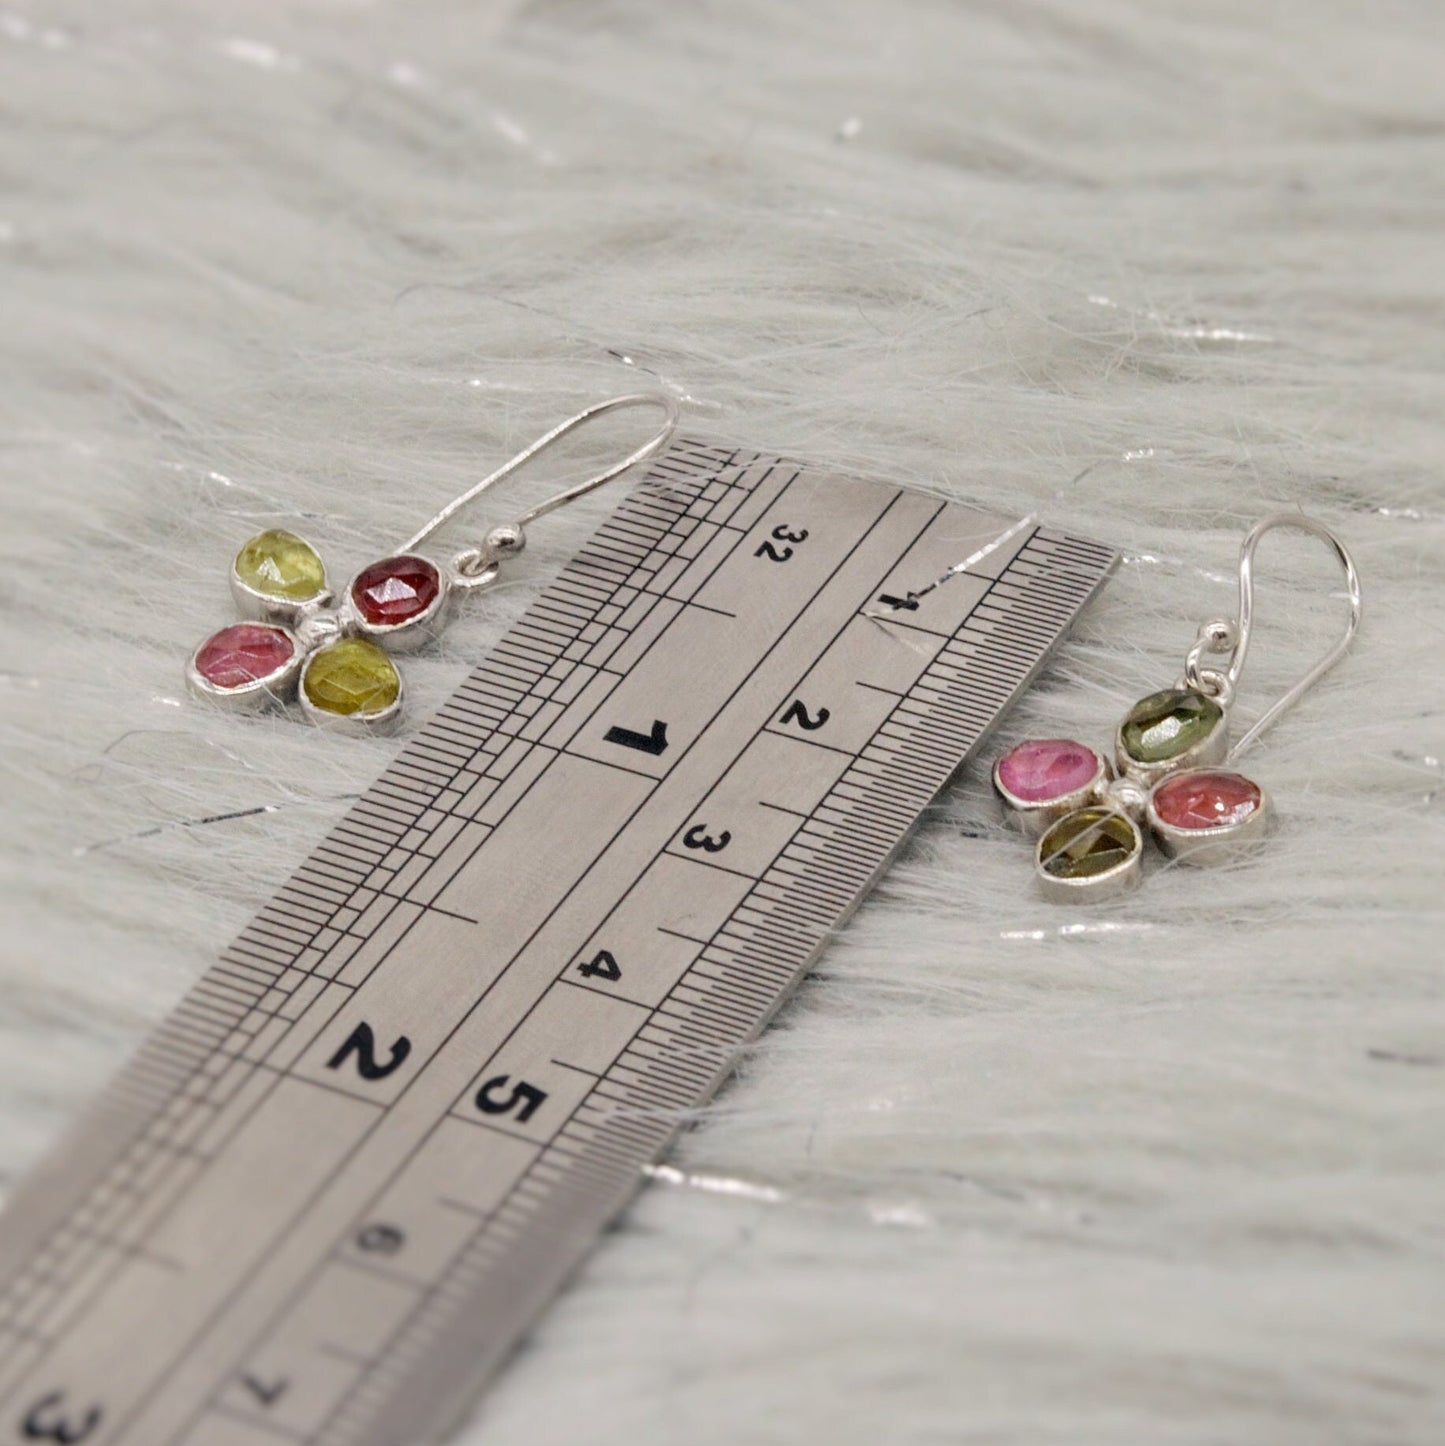 Pink Green Tourmaline Earrings, Dangle Drop Sterling Silver Earrings, October Birthstone Earrings, Tourmaline Jewelry, Cute Earrings